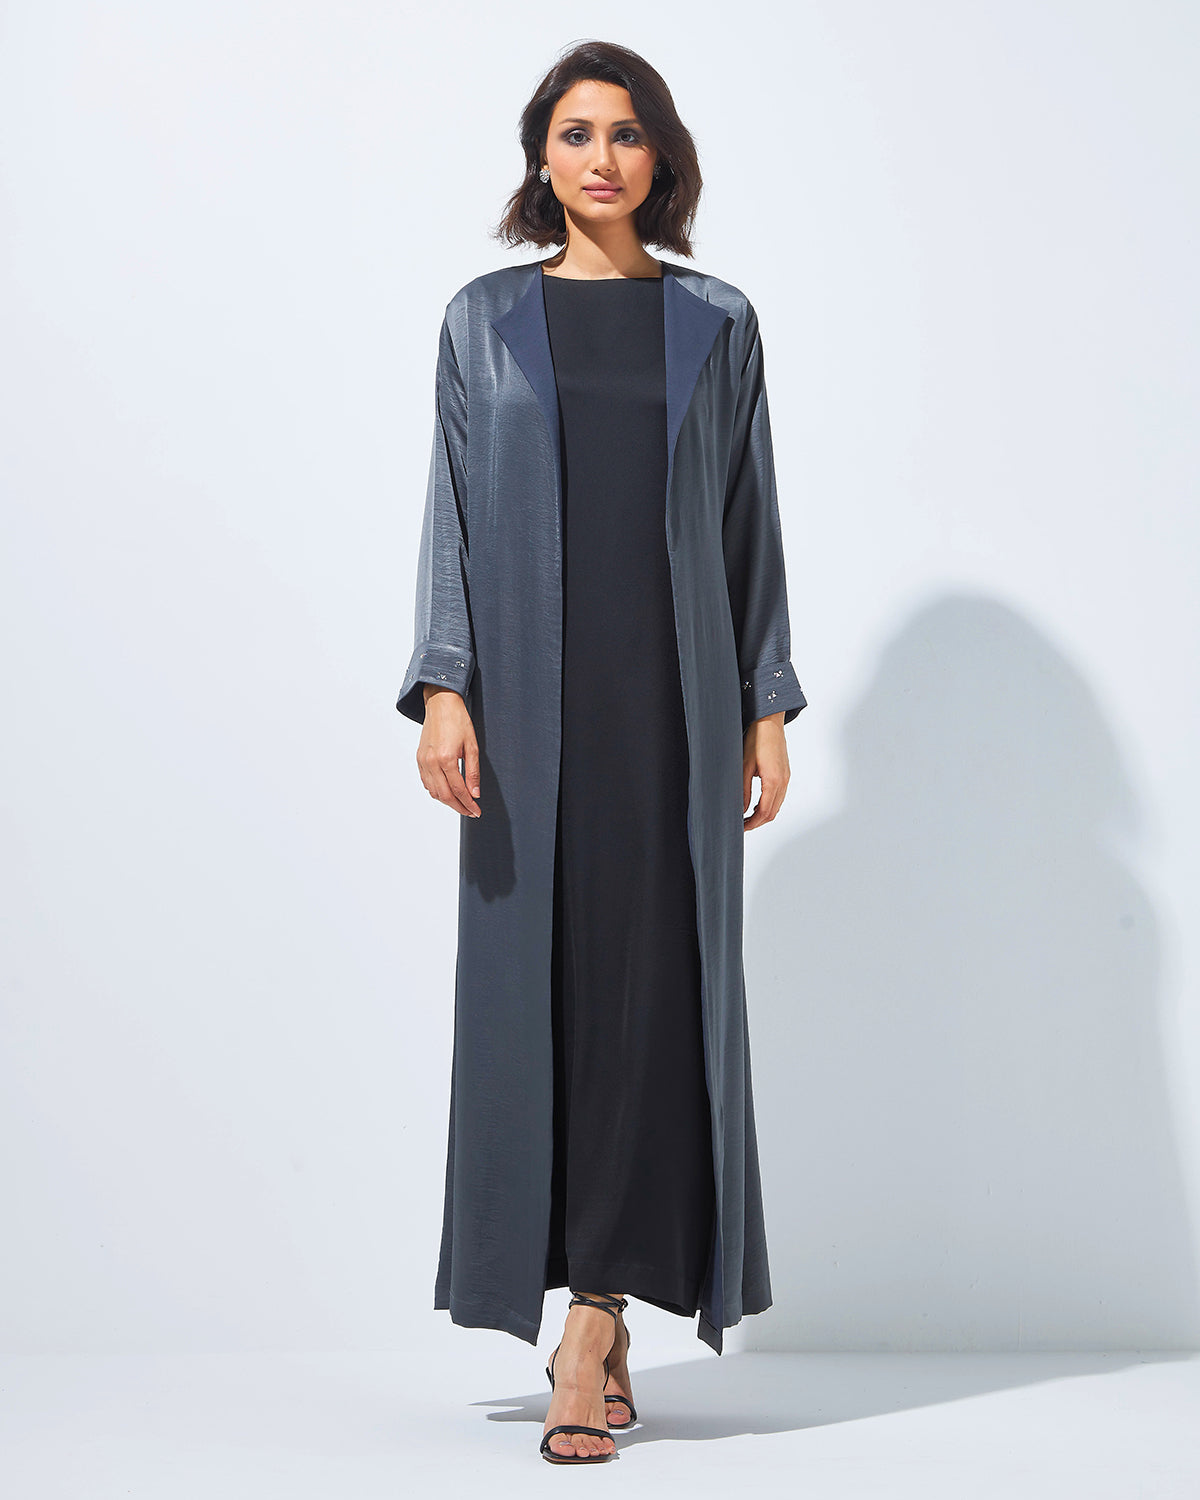 Minimalist Grey Abaya with Folded Cuffs